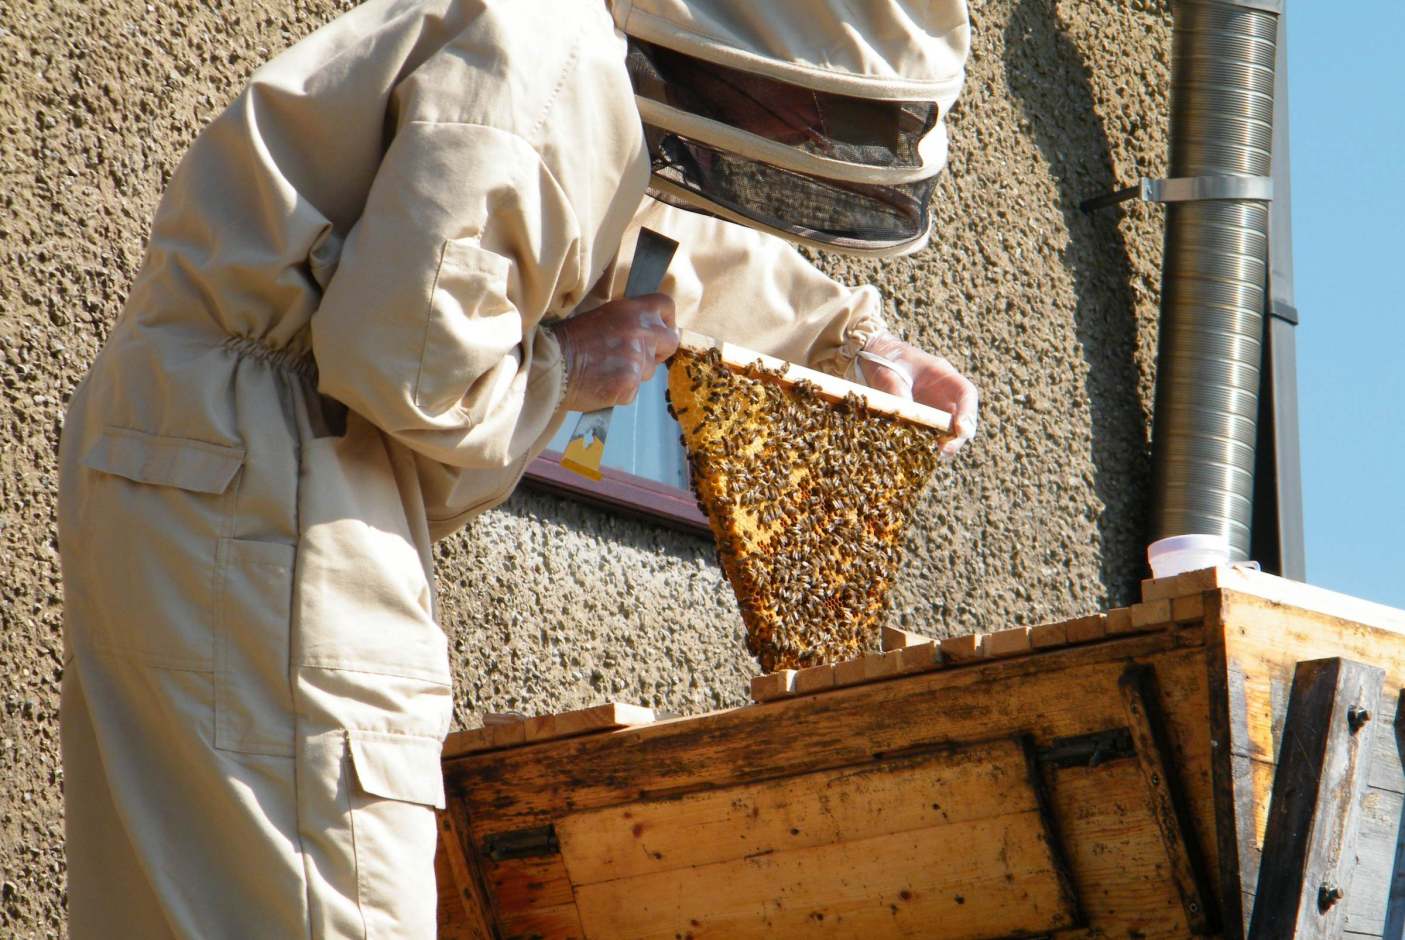 II. Importance of Beekeeping Ethics